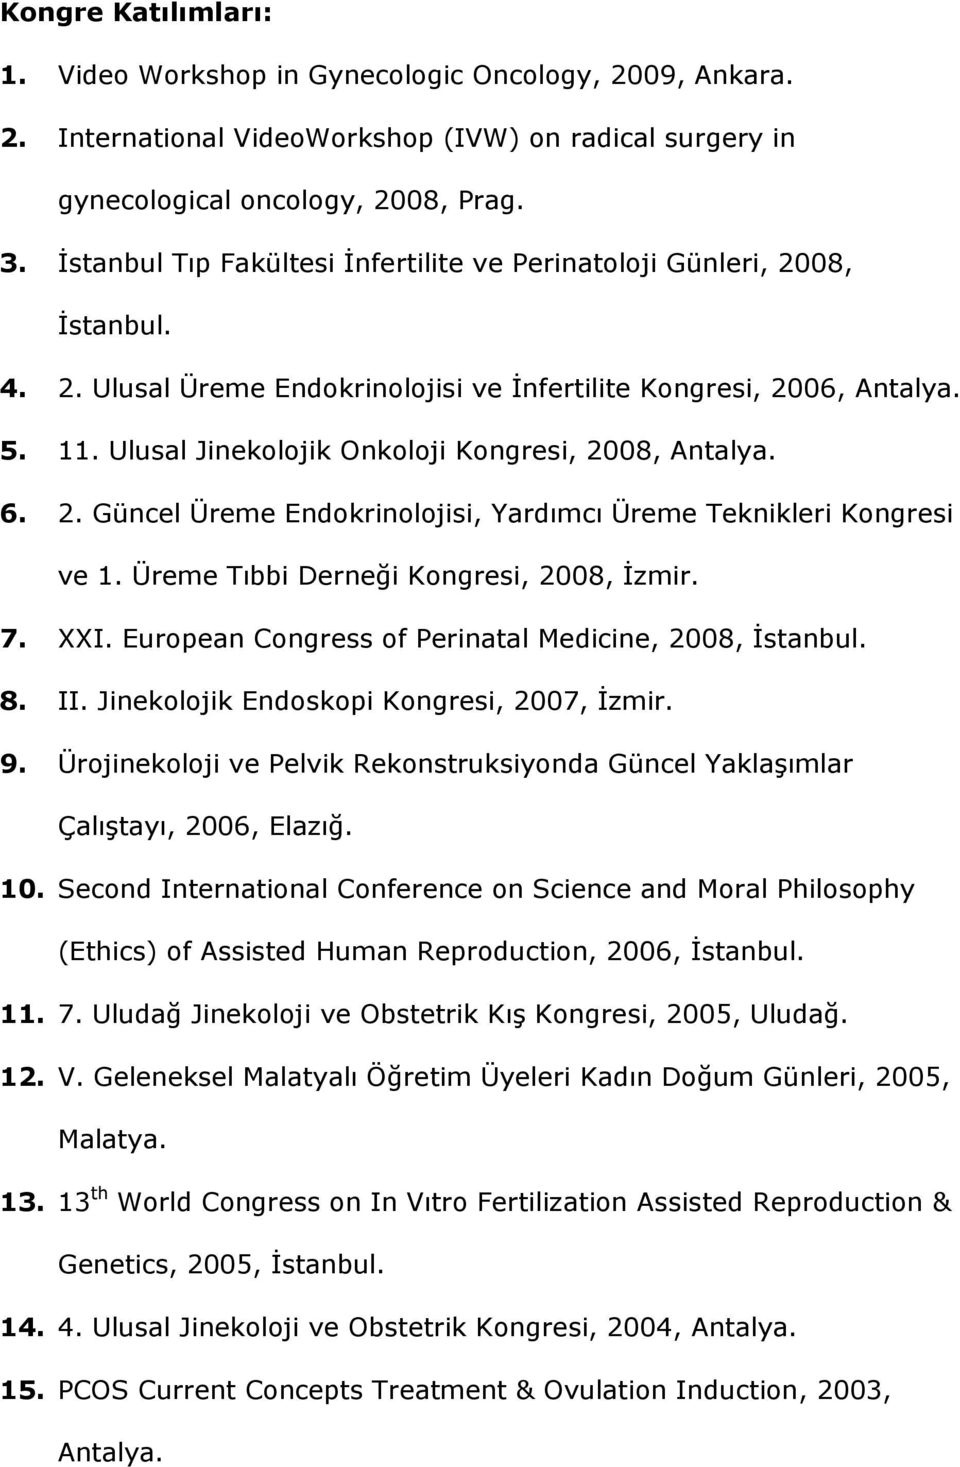 Ulusal Jinekolojik Onkoloji Kongresi, 2008, Antalya. 6. 2. Güncel Üreme Endokrinolojisi, Yardımcı Üreme Teknikleri Kongresi ve 1. Üreme Tıbbi Derneği Kongresi, 2008, İzmir. 7. XXI.